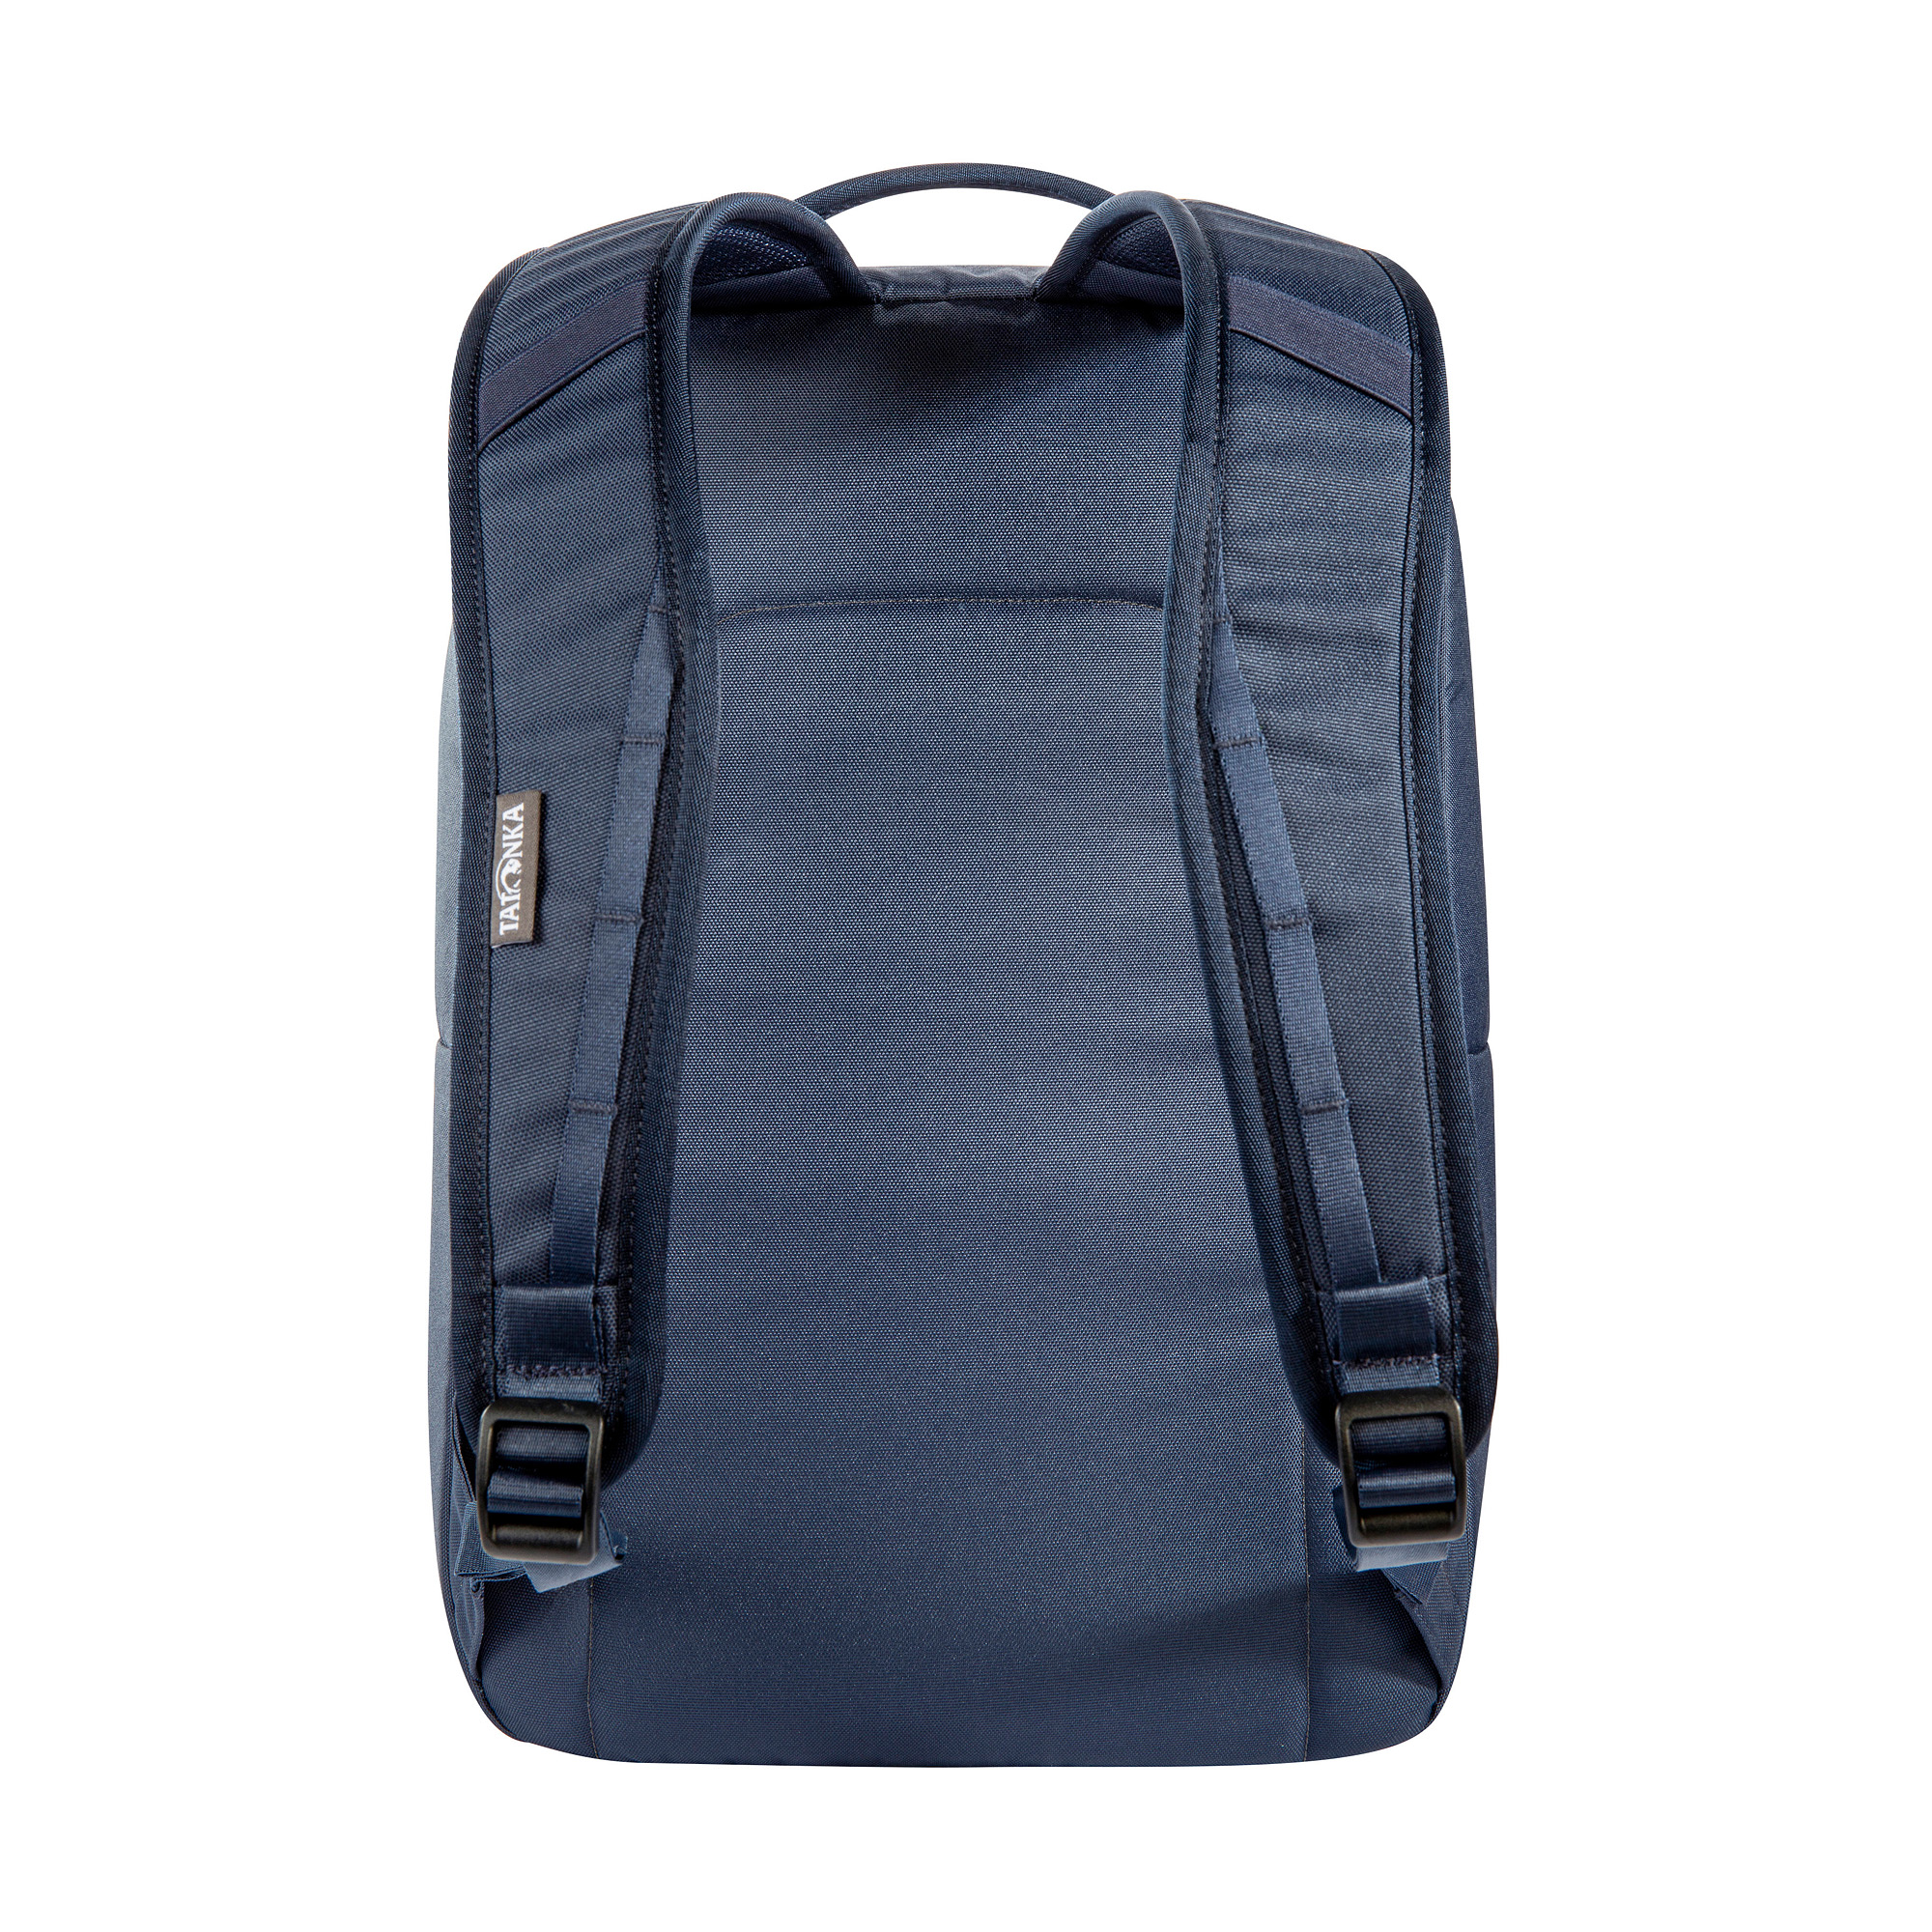 Tatonka Cooler Backpack navy blau Tagesrucksäcke 4013236384406